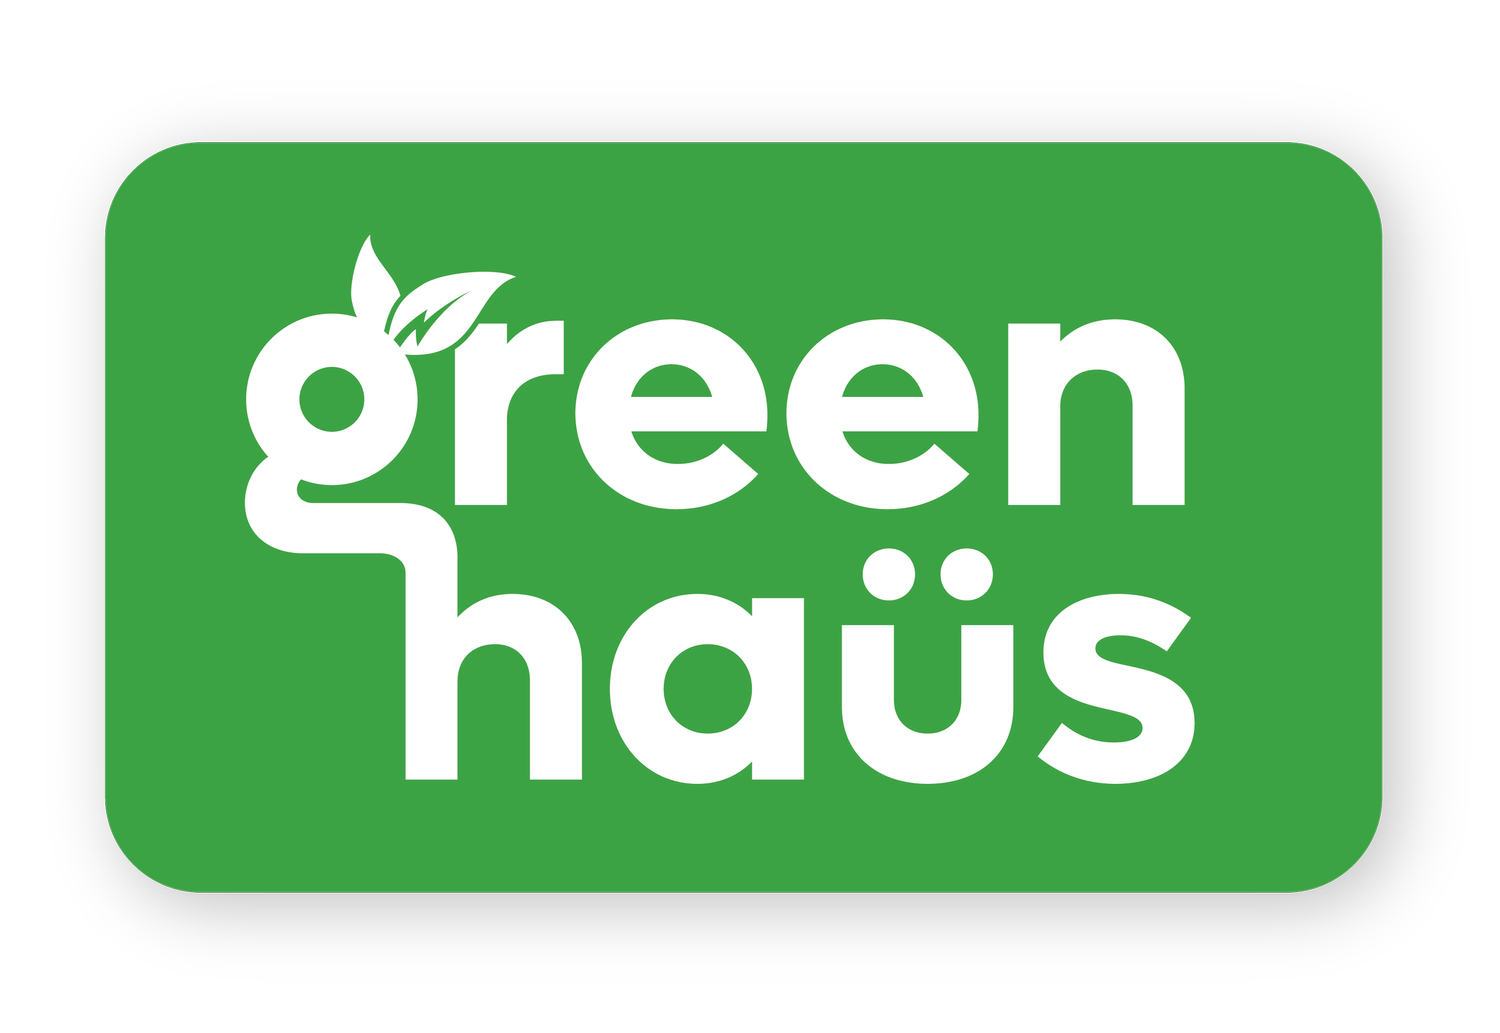 Greenhaus